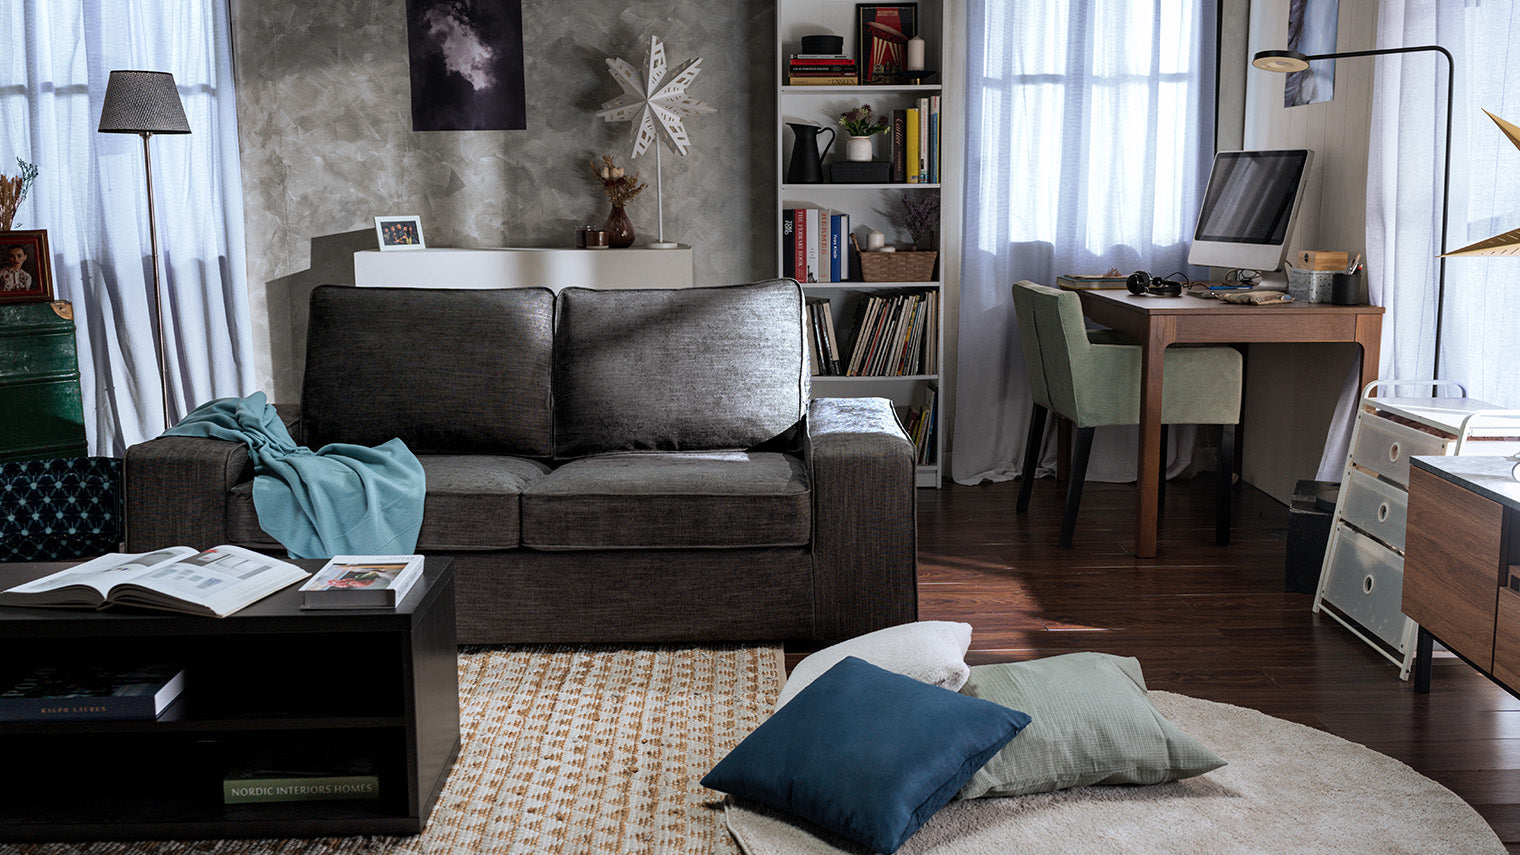 Sofás cama - Calidad y comodidad - IKEA